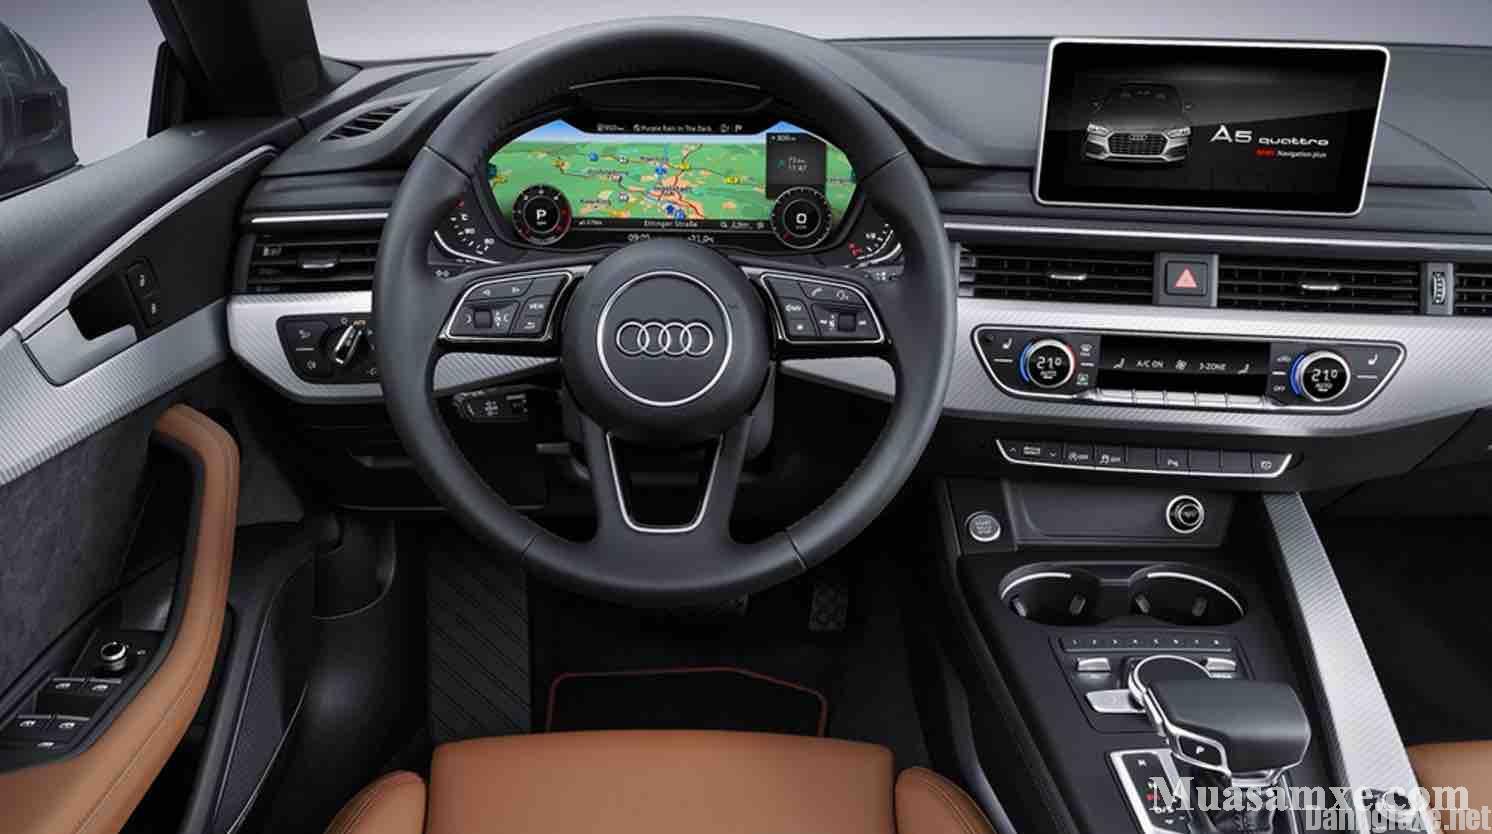 Đánh giá xe Audi A5 Sportback 2017 về thiết kế vận hành và giá bán